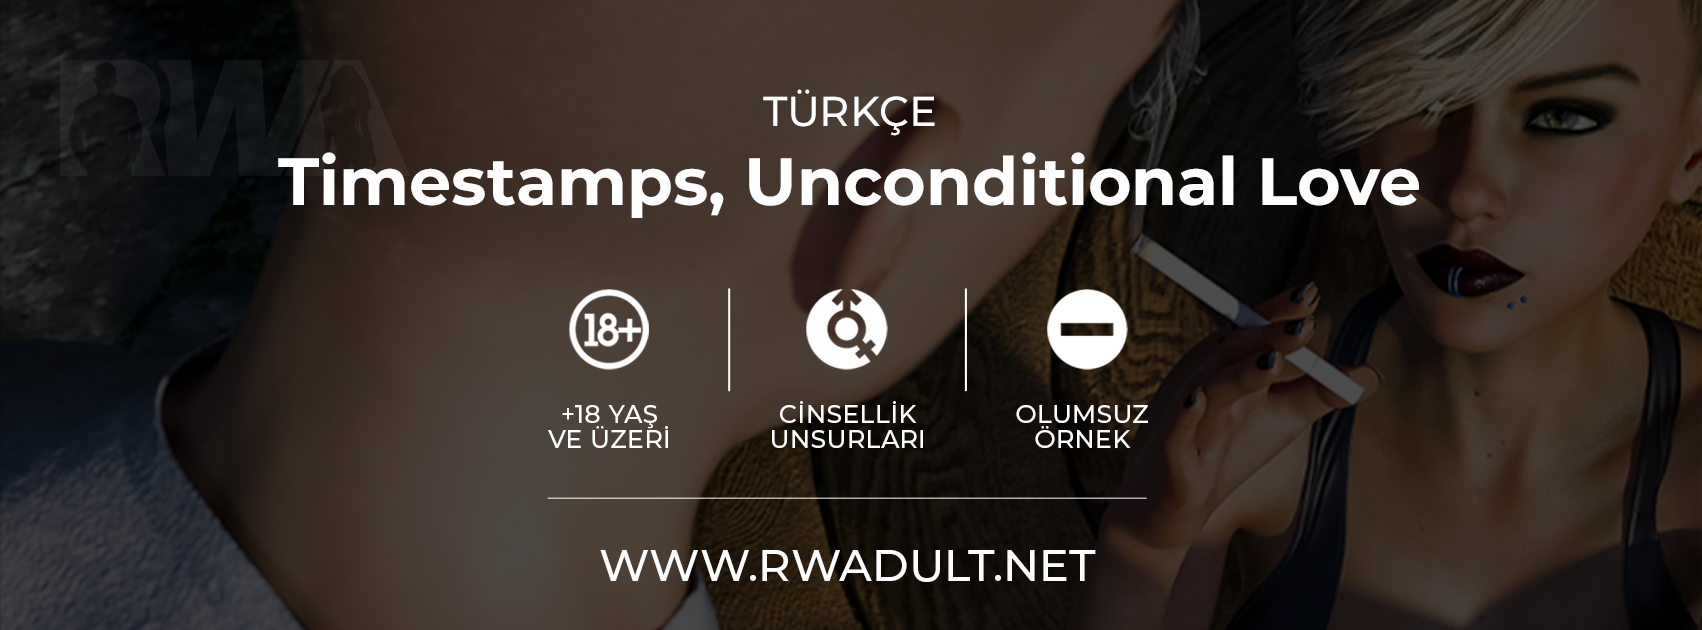 RWADULT - Türkiye'nin En Büyük Yetişkin Oyun Topluluğu